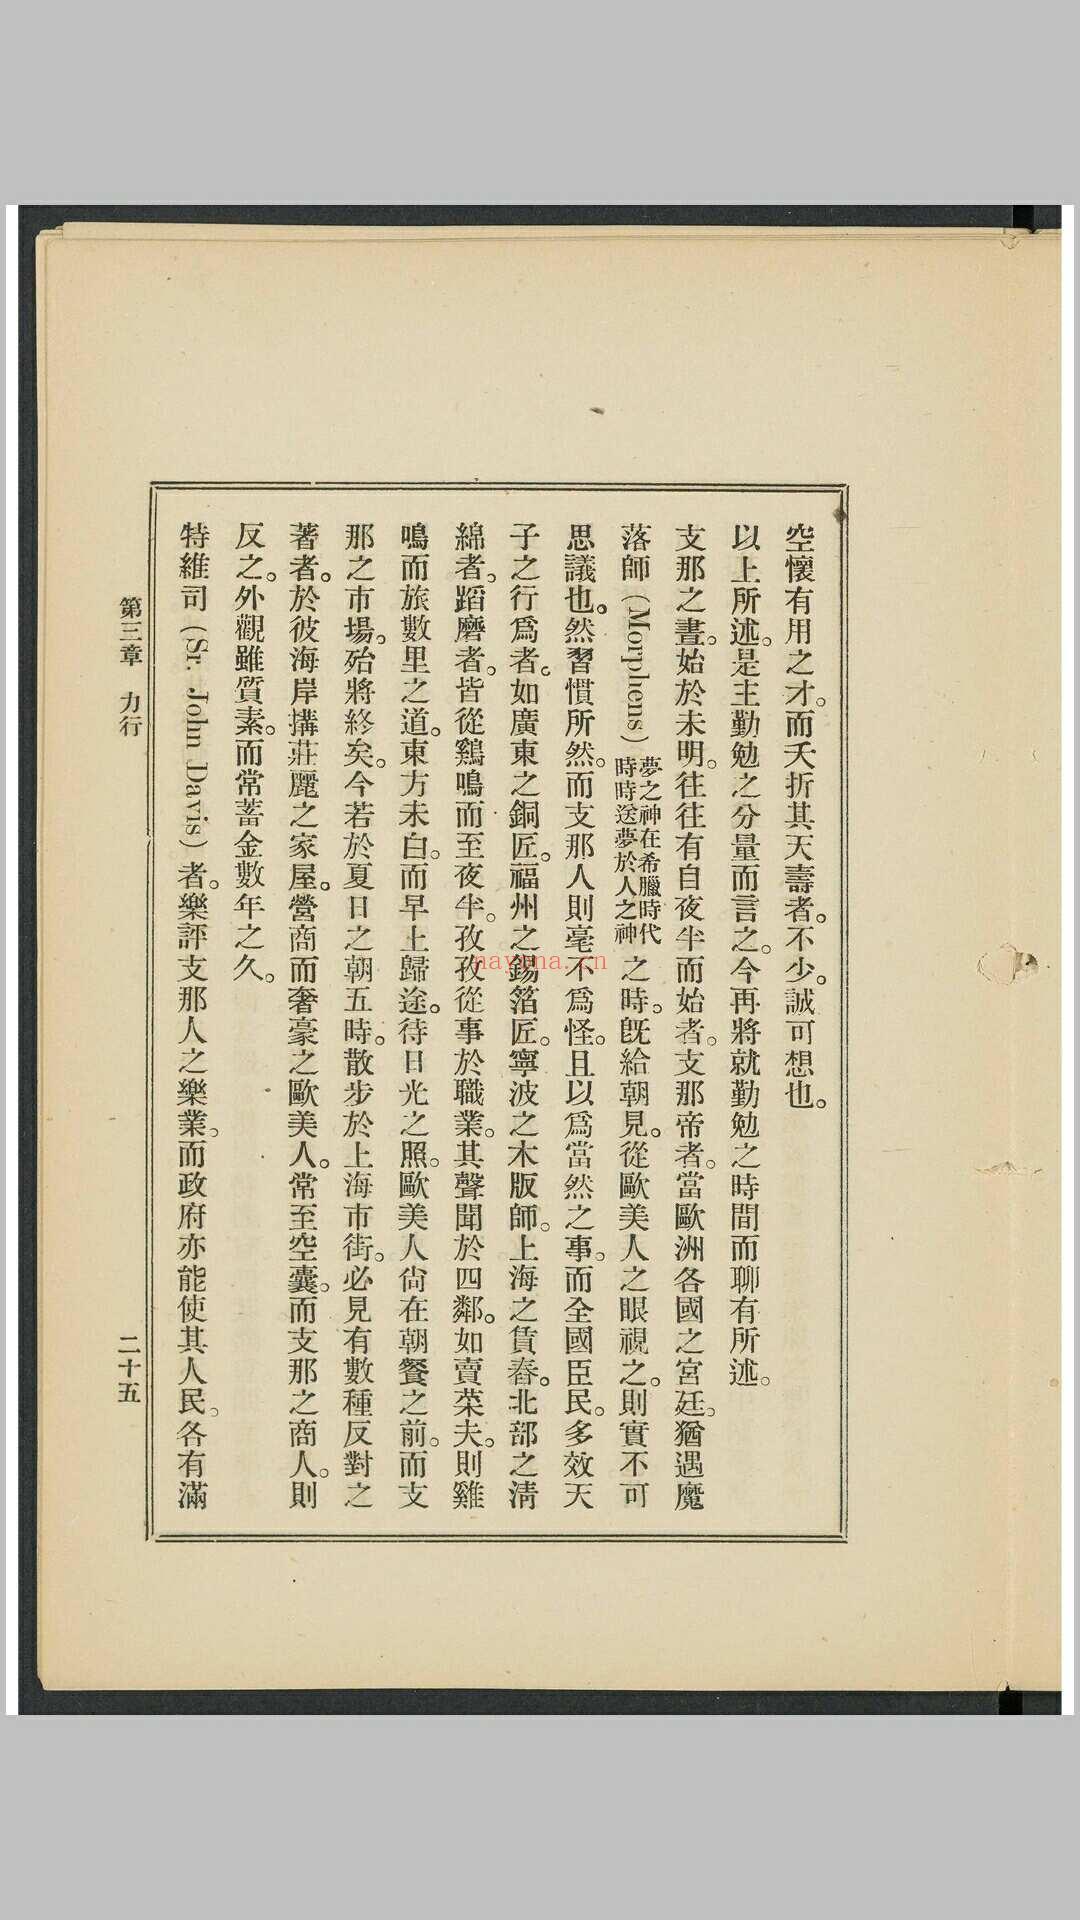 支那人之气质 斯密斯着 作新社译 作新社, 1903